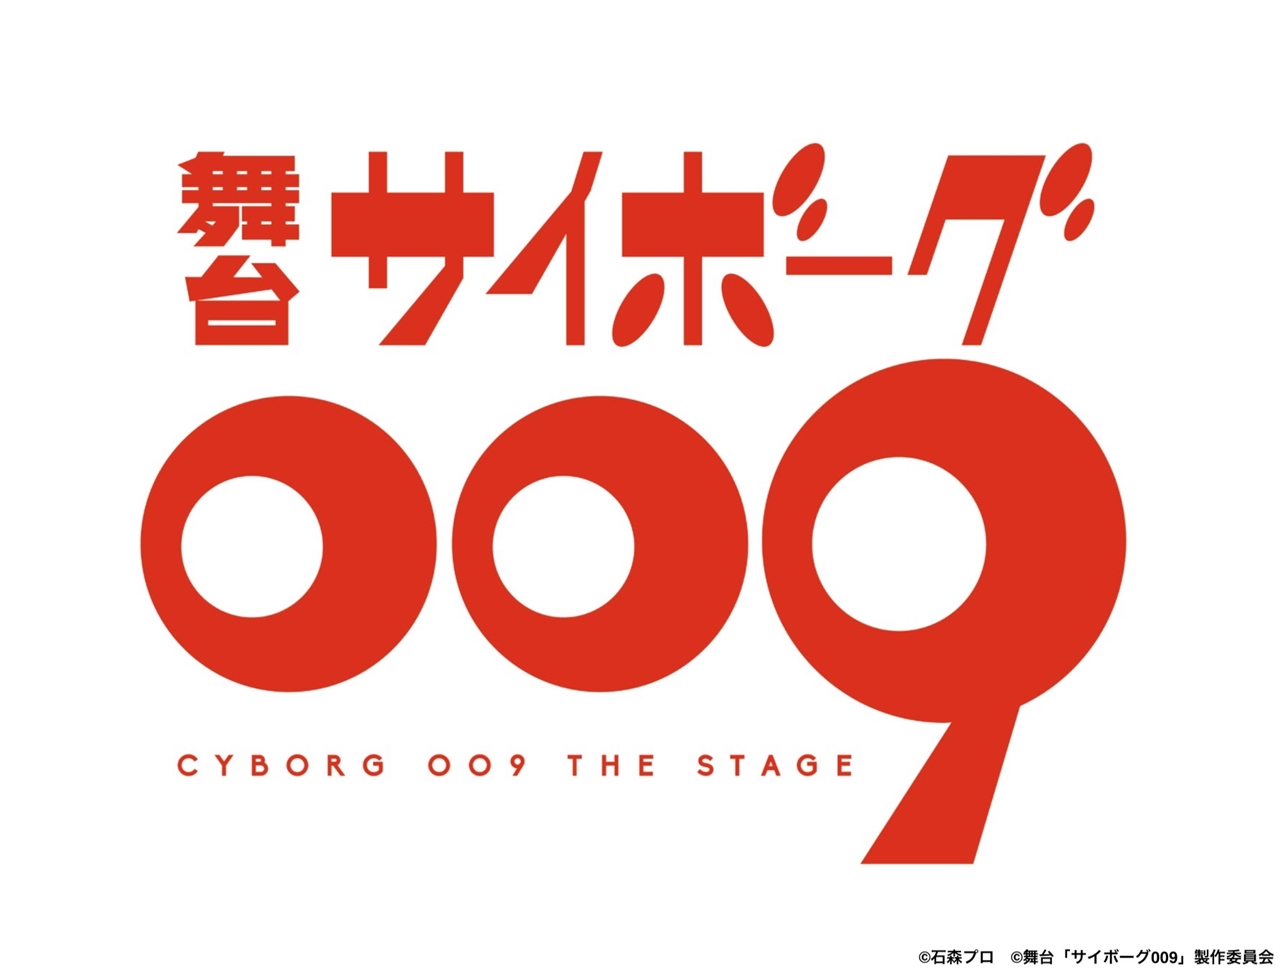 石ノ森章太郎によるSF漫画作品「サイボーグ009」誕生60周年を迎える 